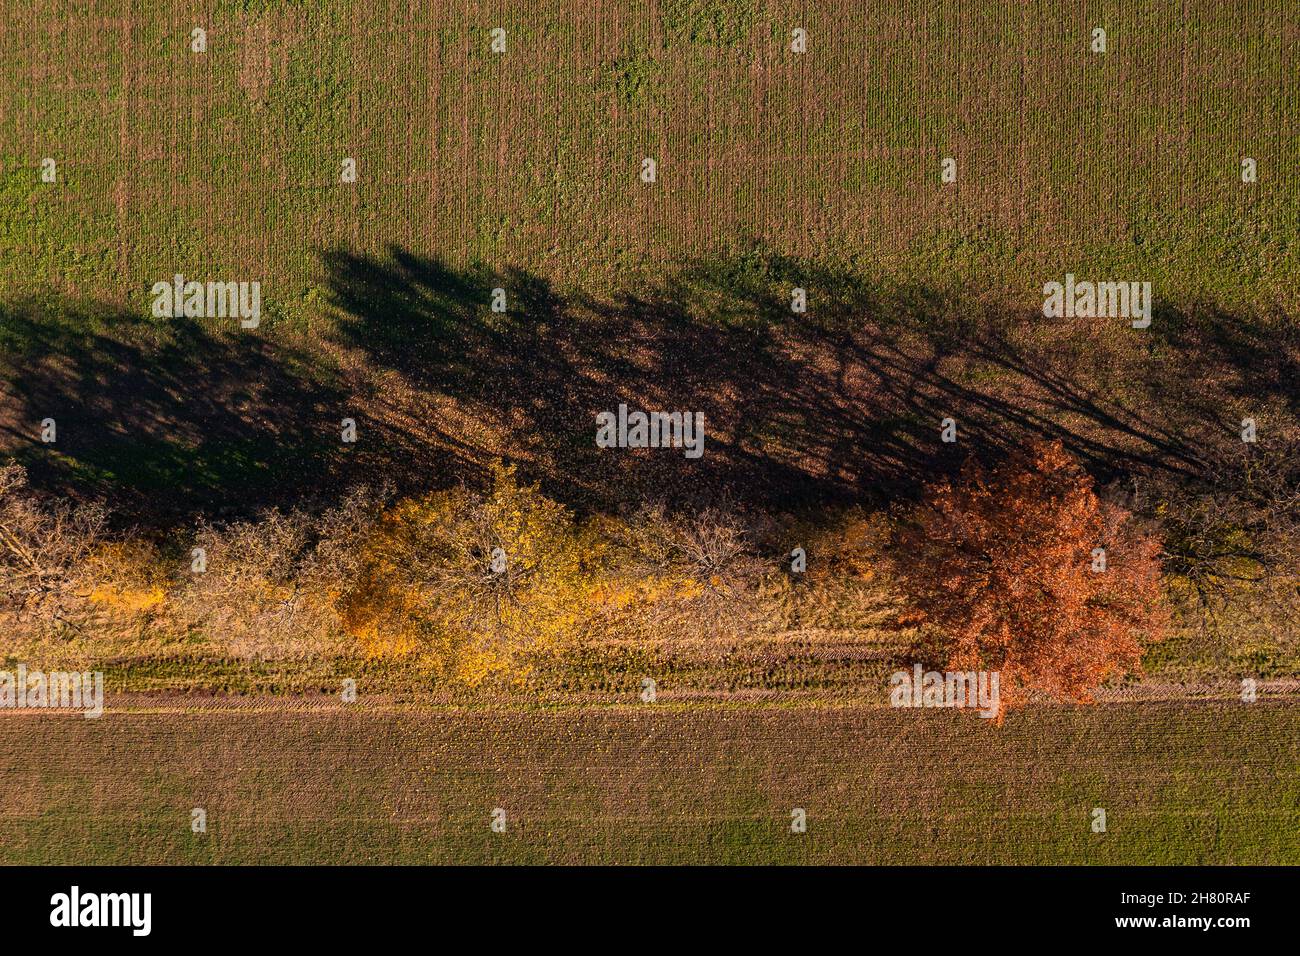 Vista aerea dei campi separati da una fila di alberi con foglie colorate in autunno Foto Stock